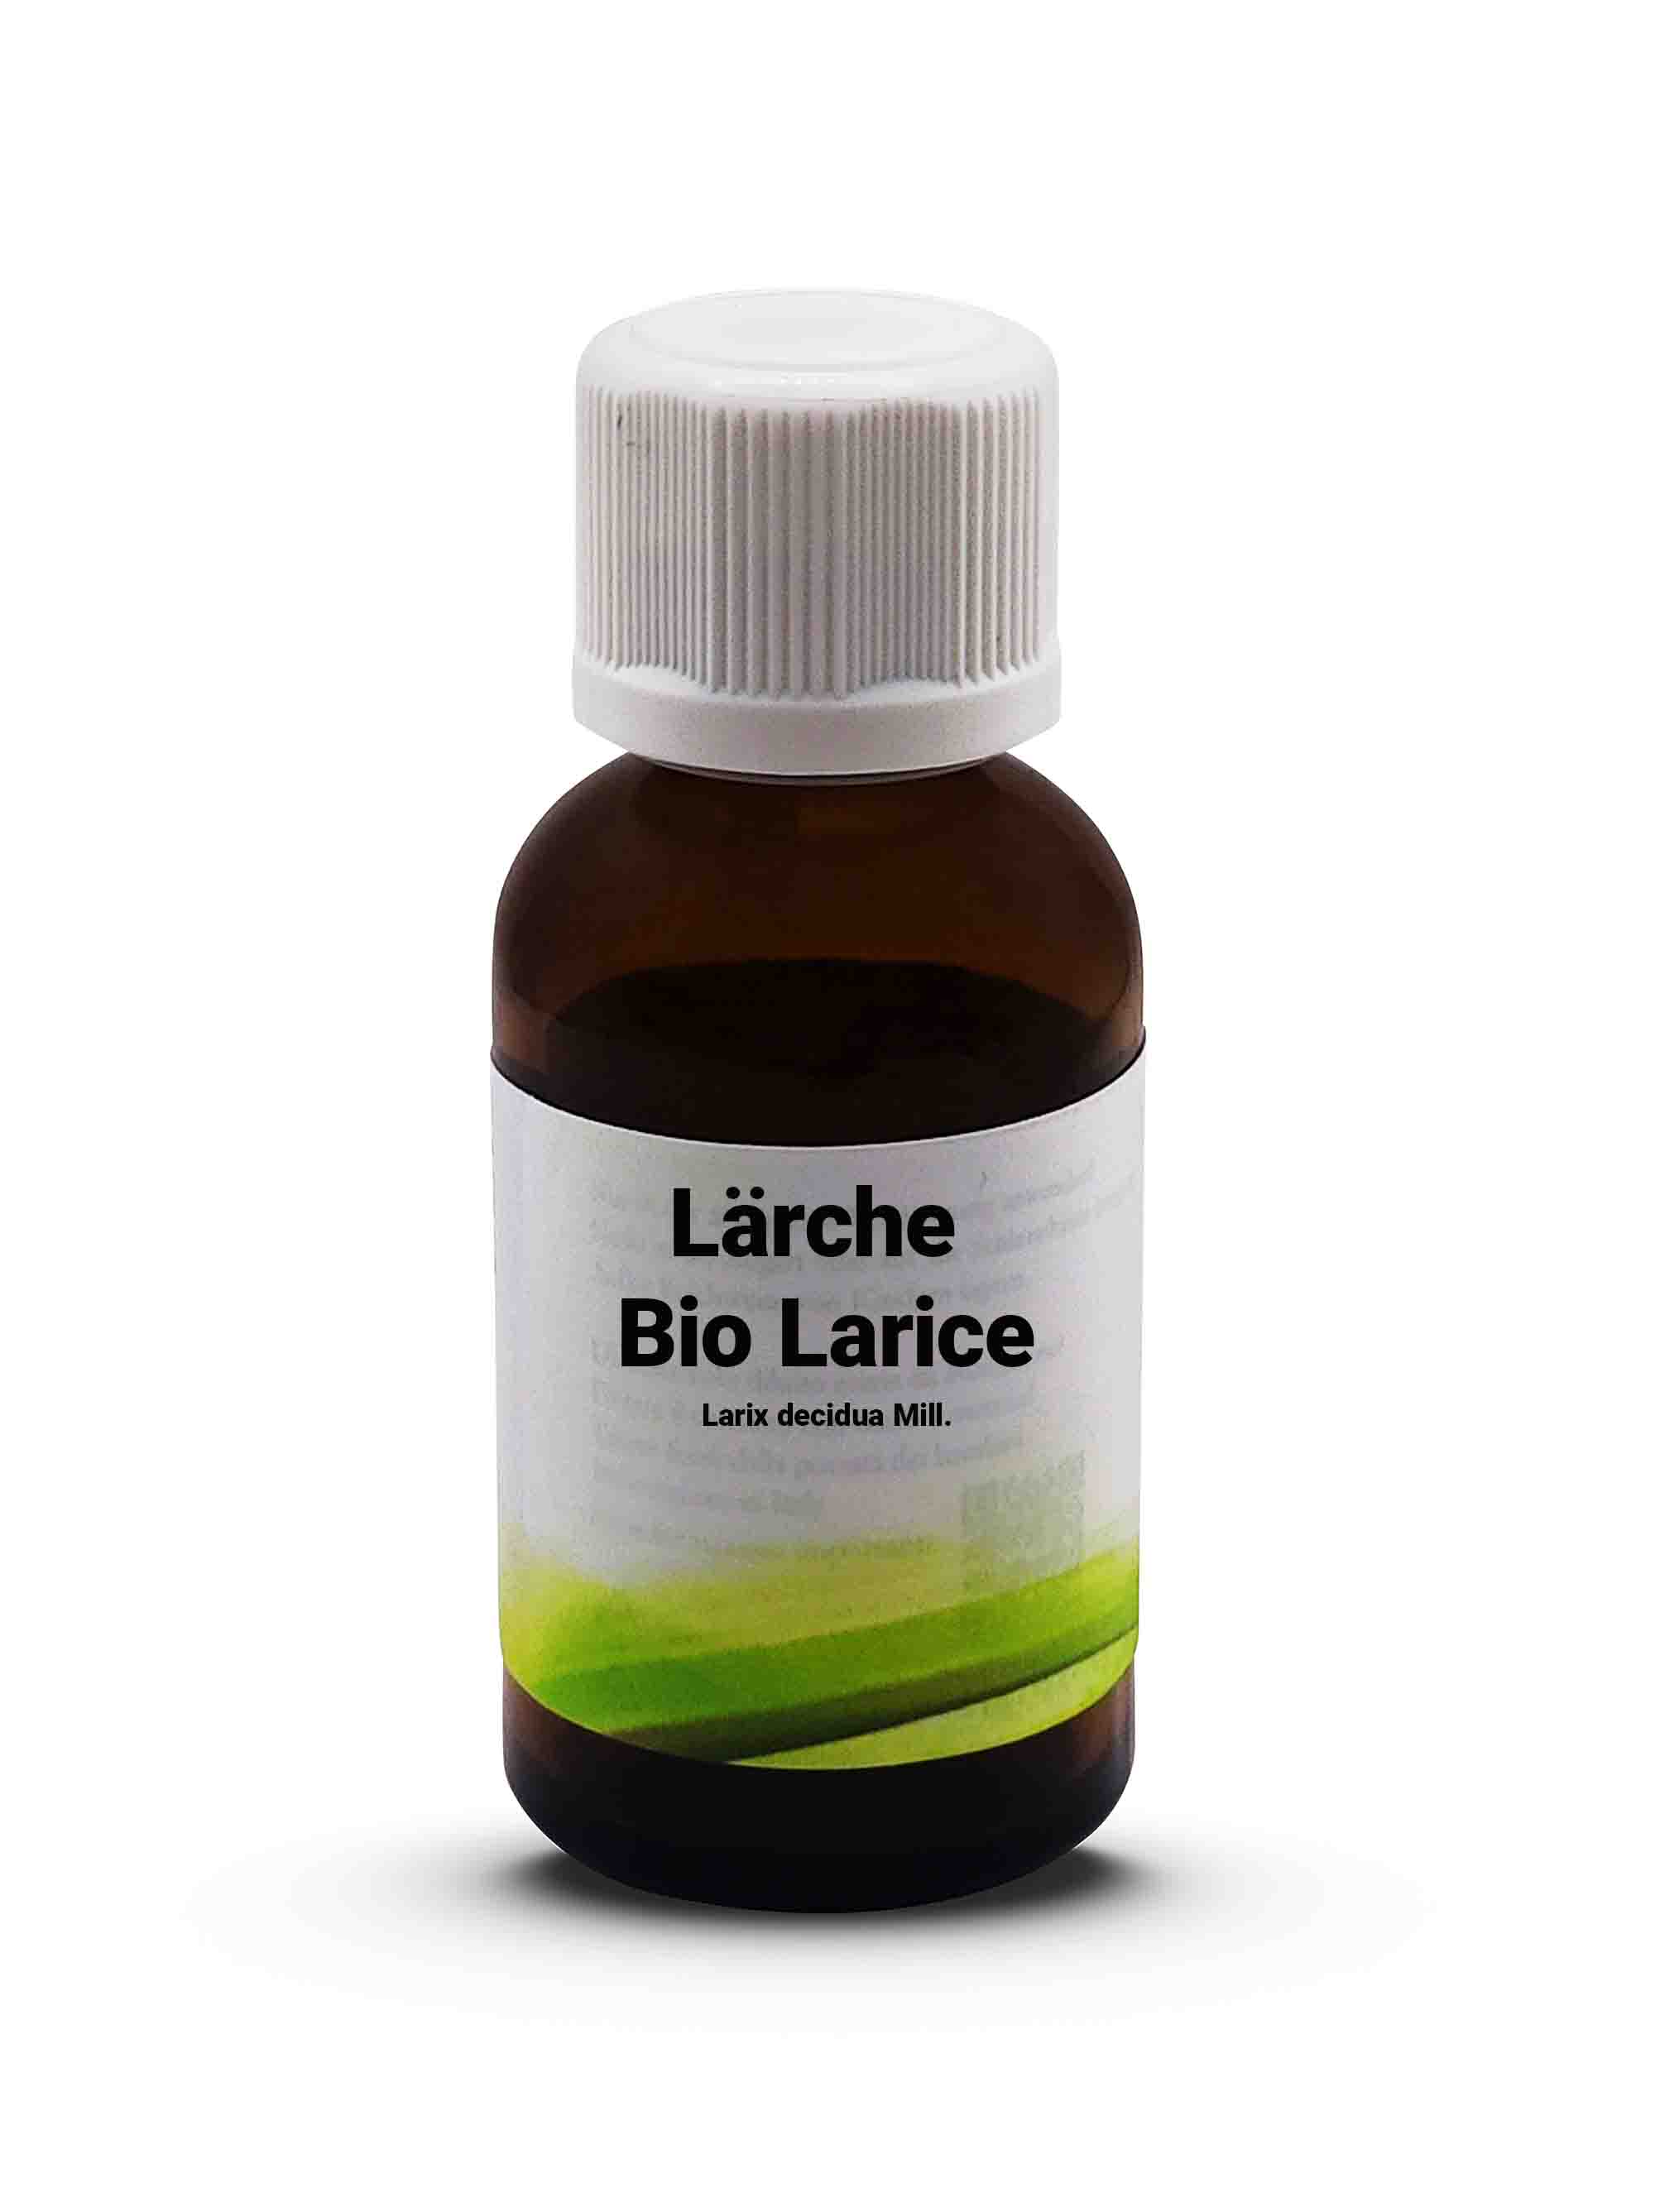 Bio Larice - Larix decidua Mill.